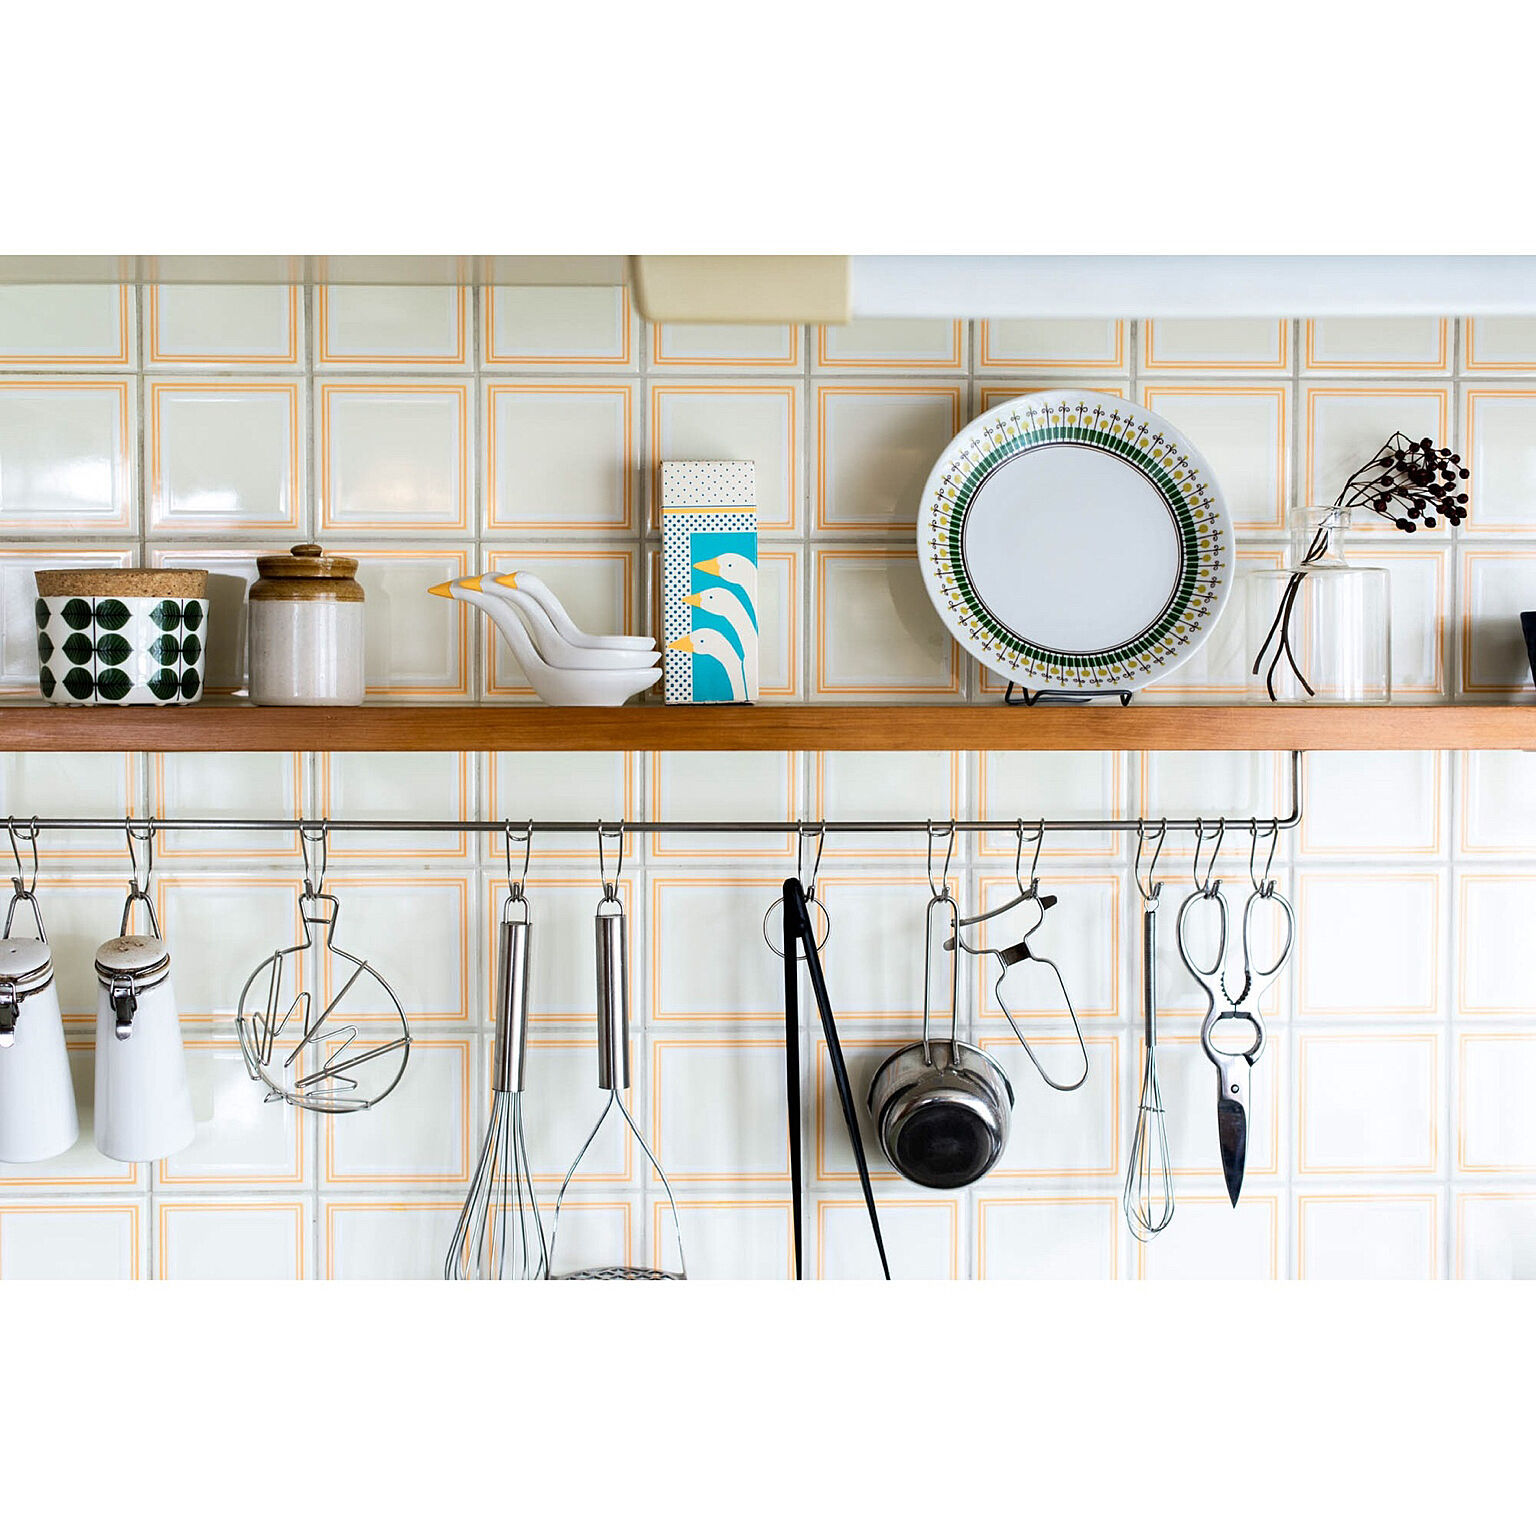 使いやすくスッキリと♡キッチンツールや調理器具の収納法 | RoomClip 